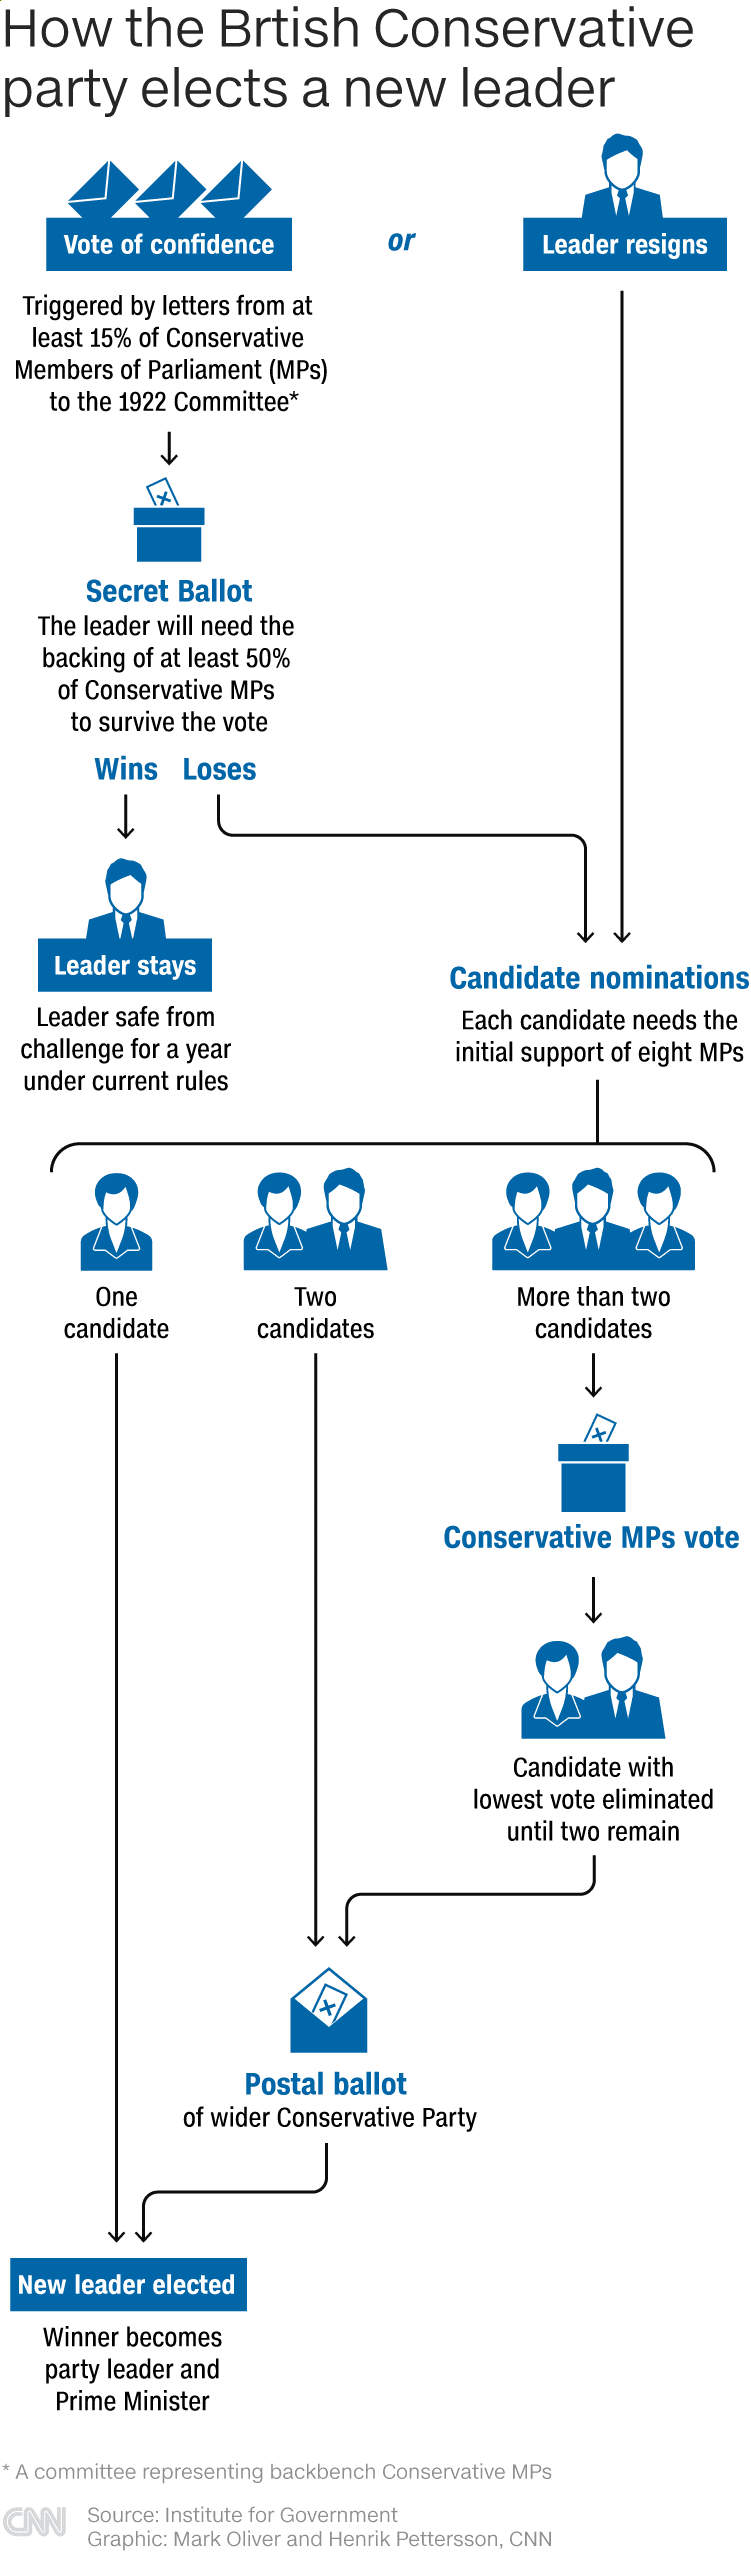 Wie die britische Konservative Partei einen neuen Vorsitzenden wählt